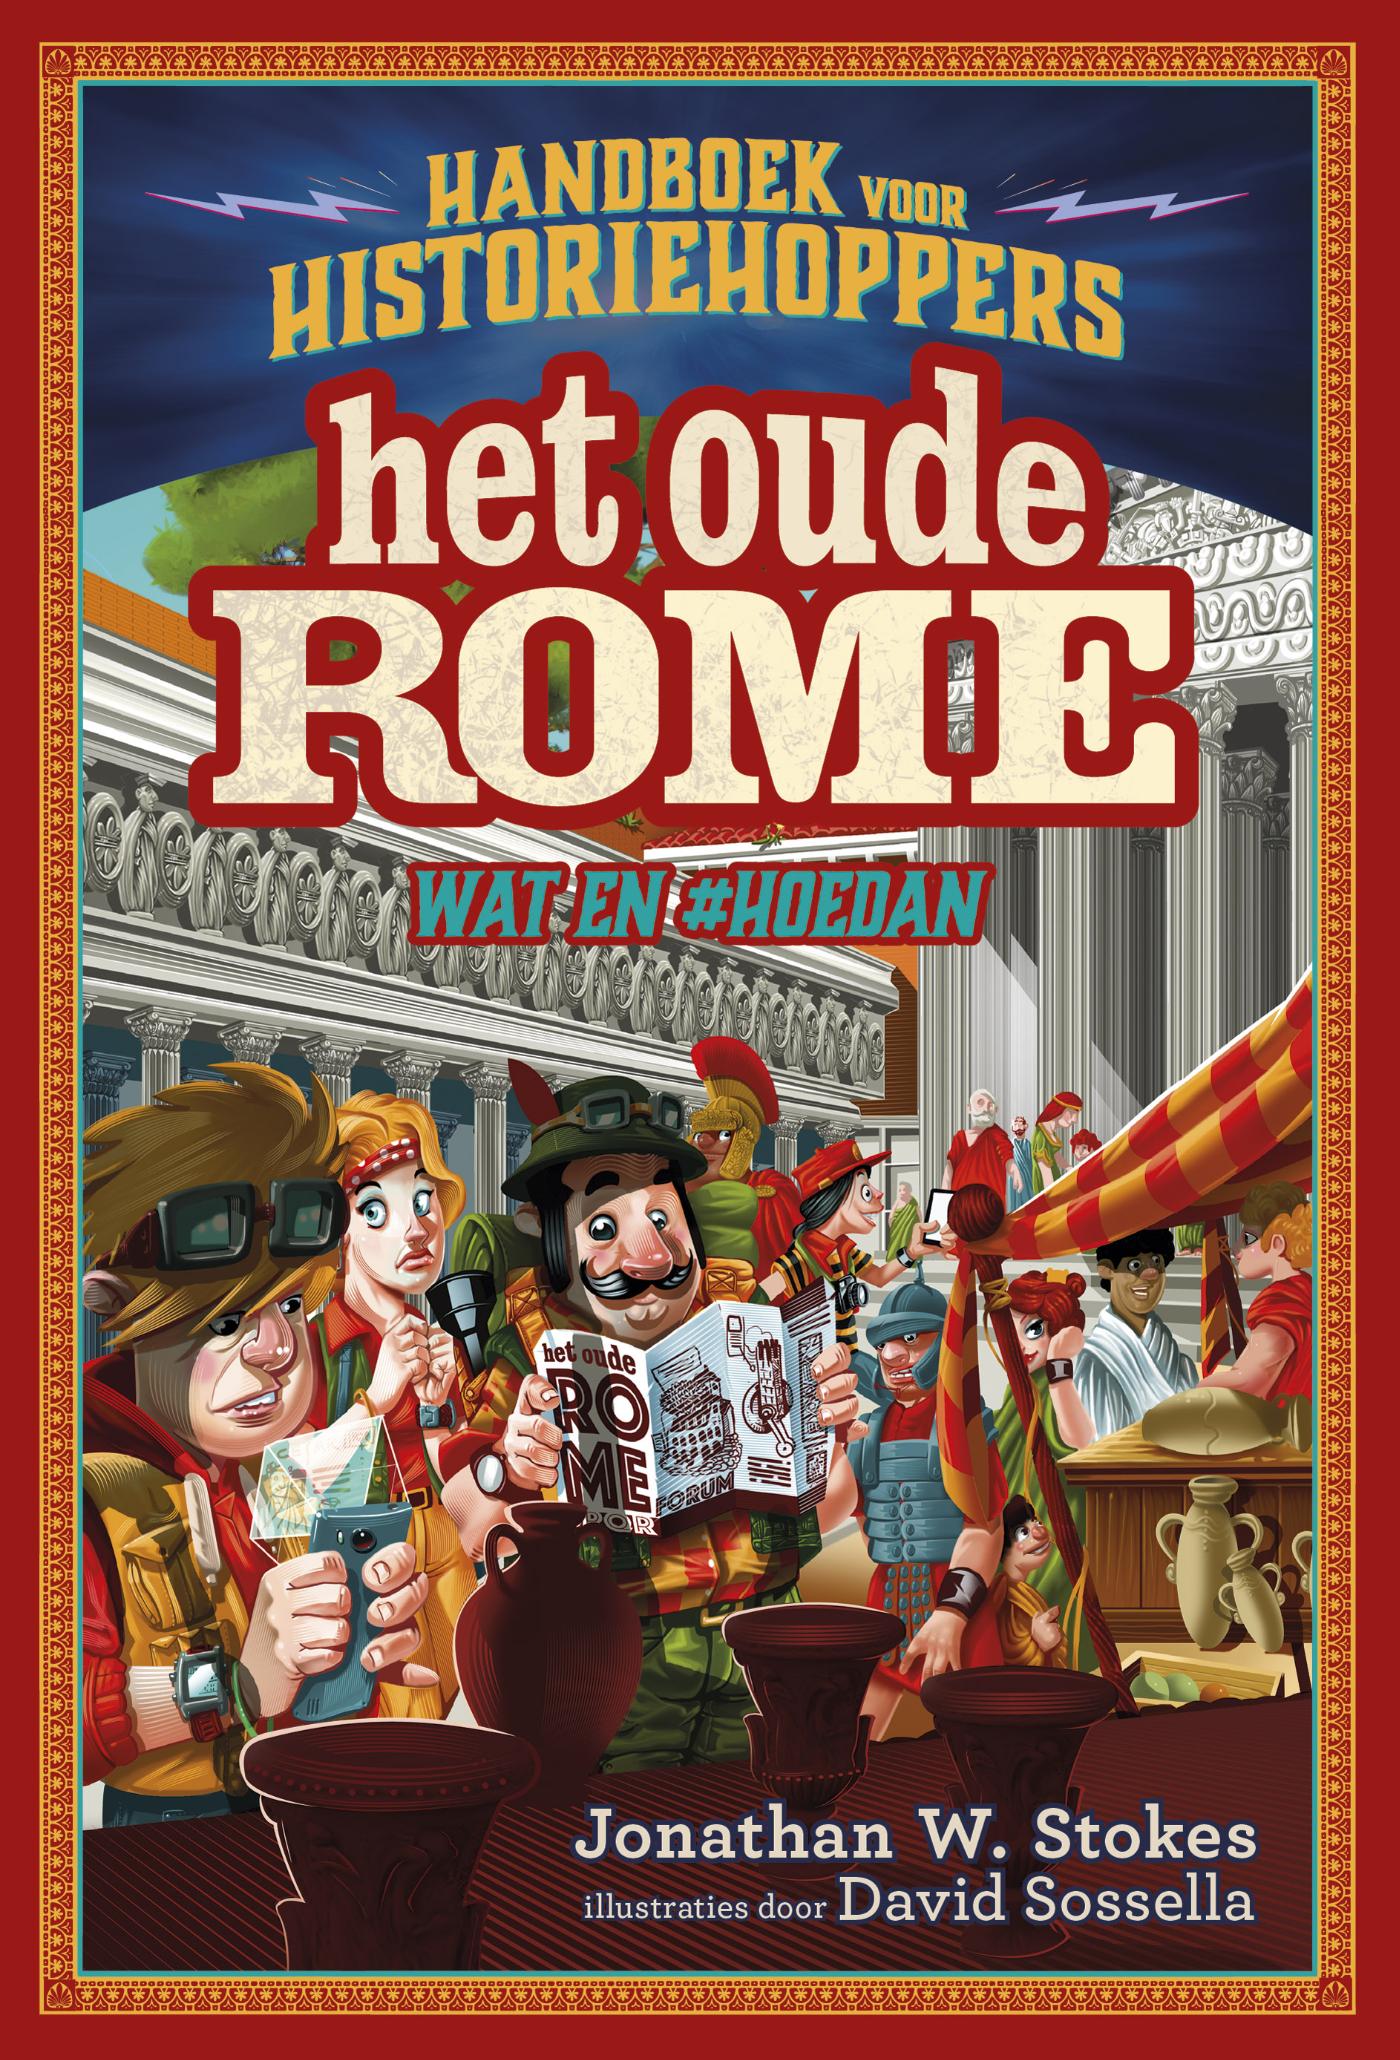 Handboek voor historiehoppers - Het oude Rome